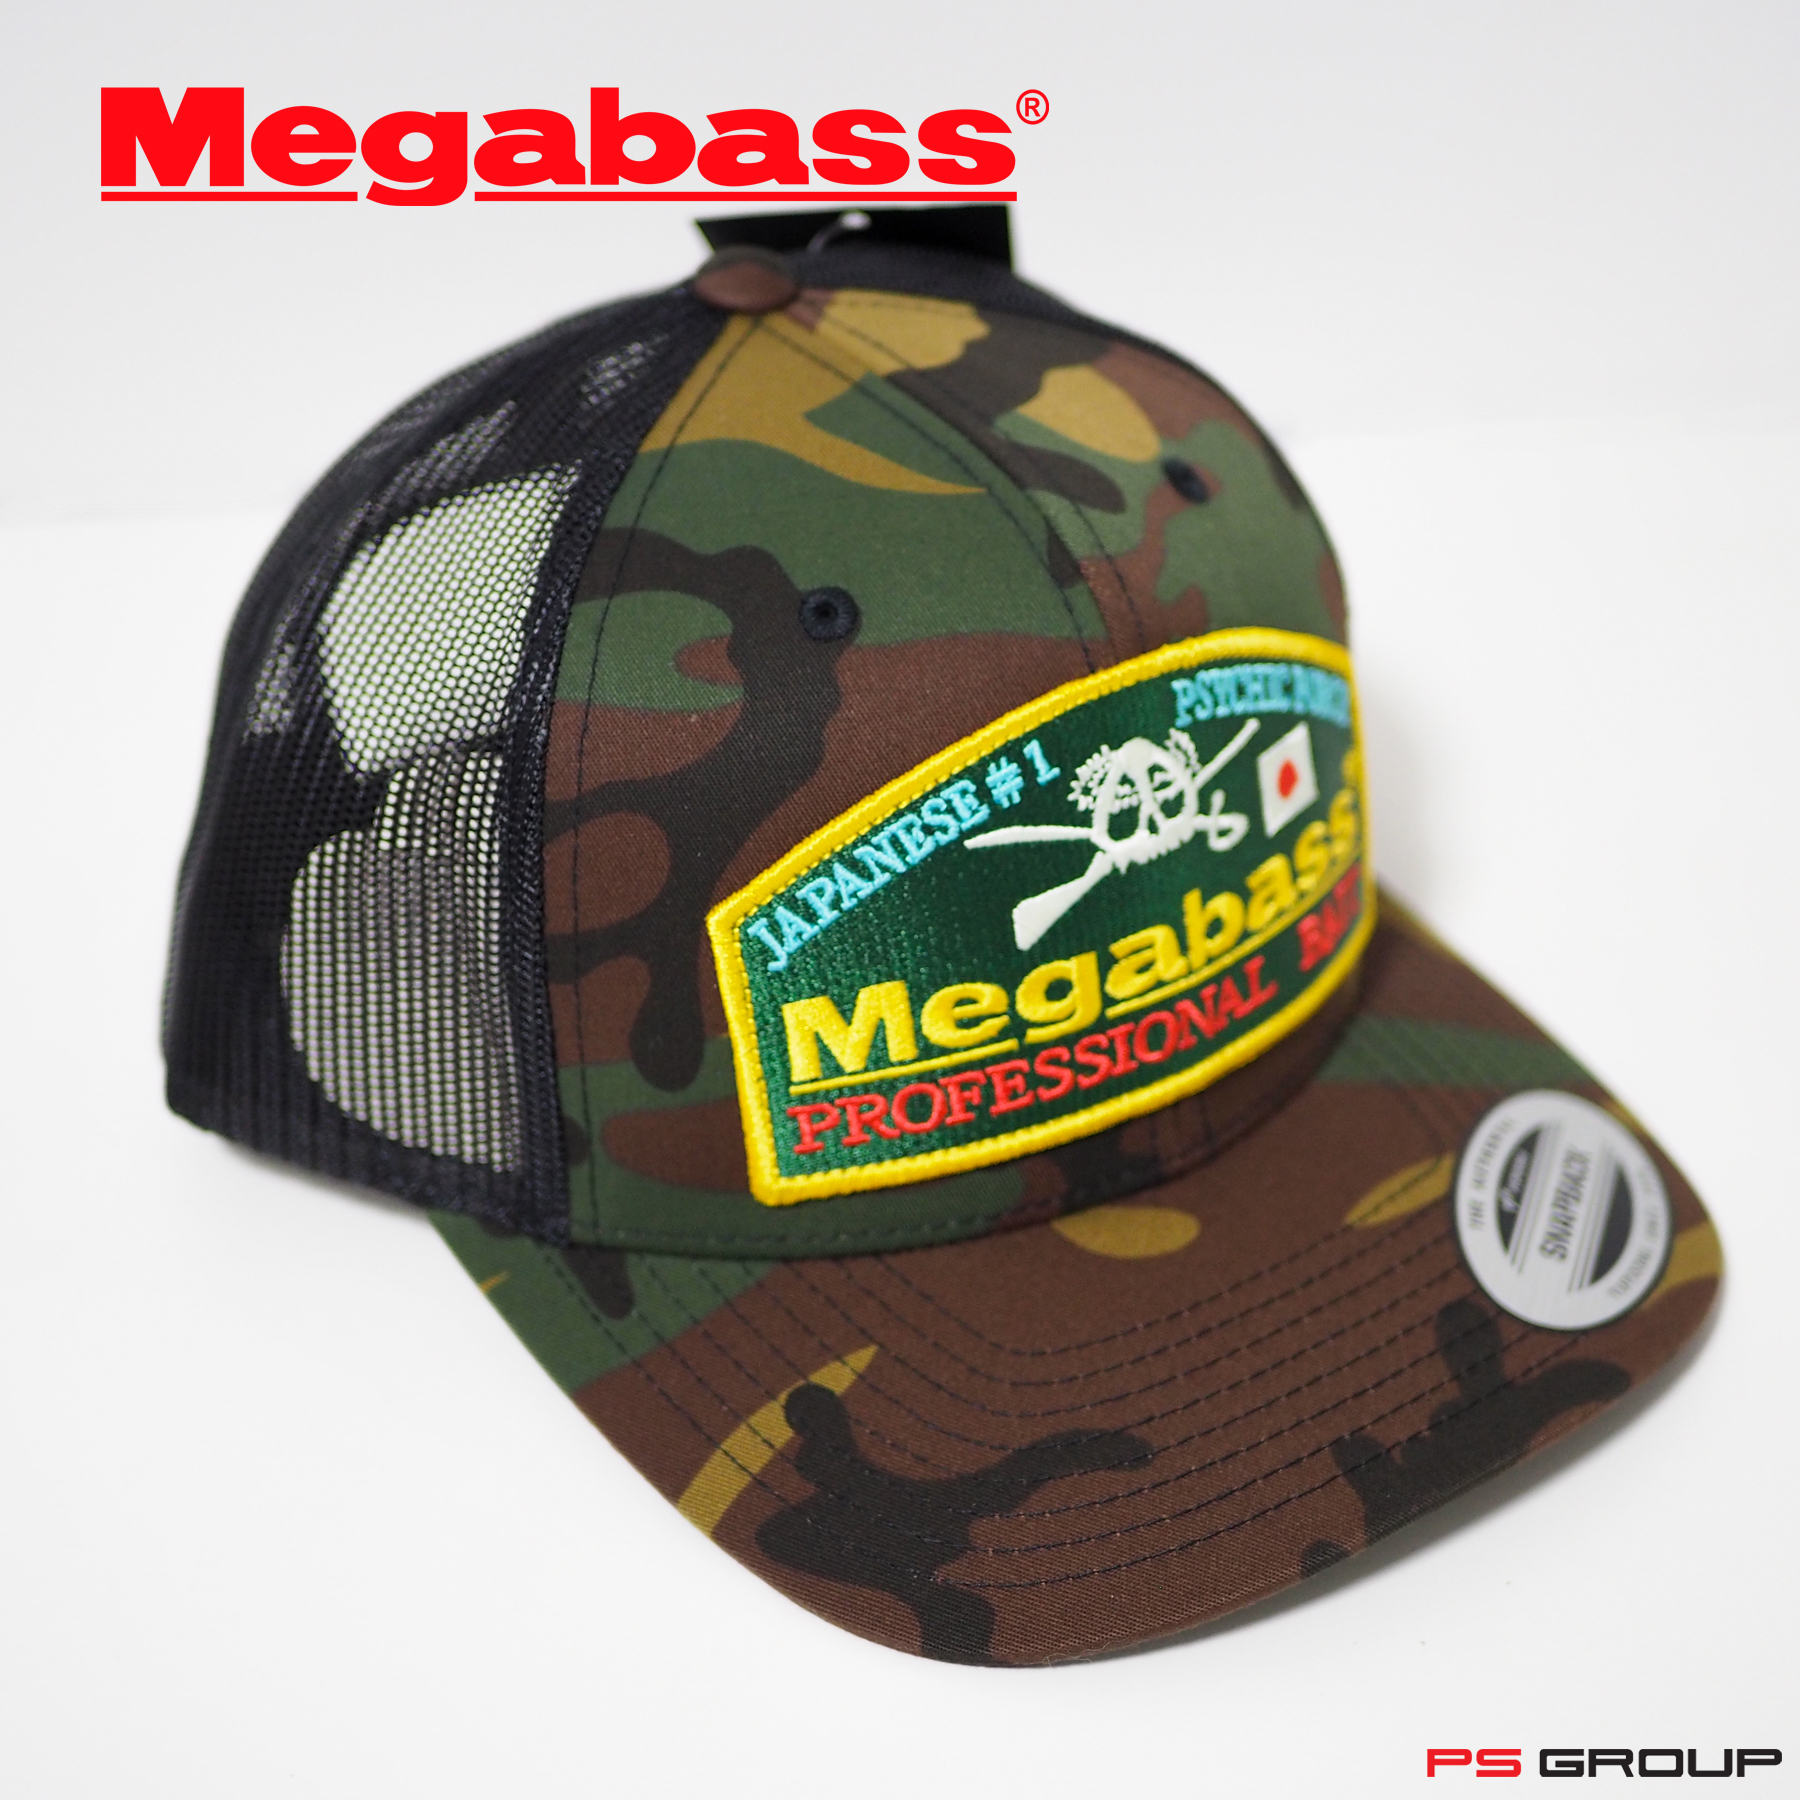 หมวกแก๊ป หมวกใส่ตกปลา Megabass Hat ลายทหาร Camo ปักลาย Bait of